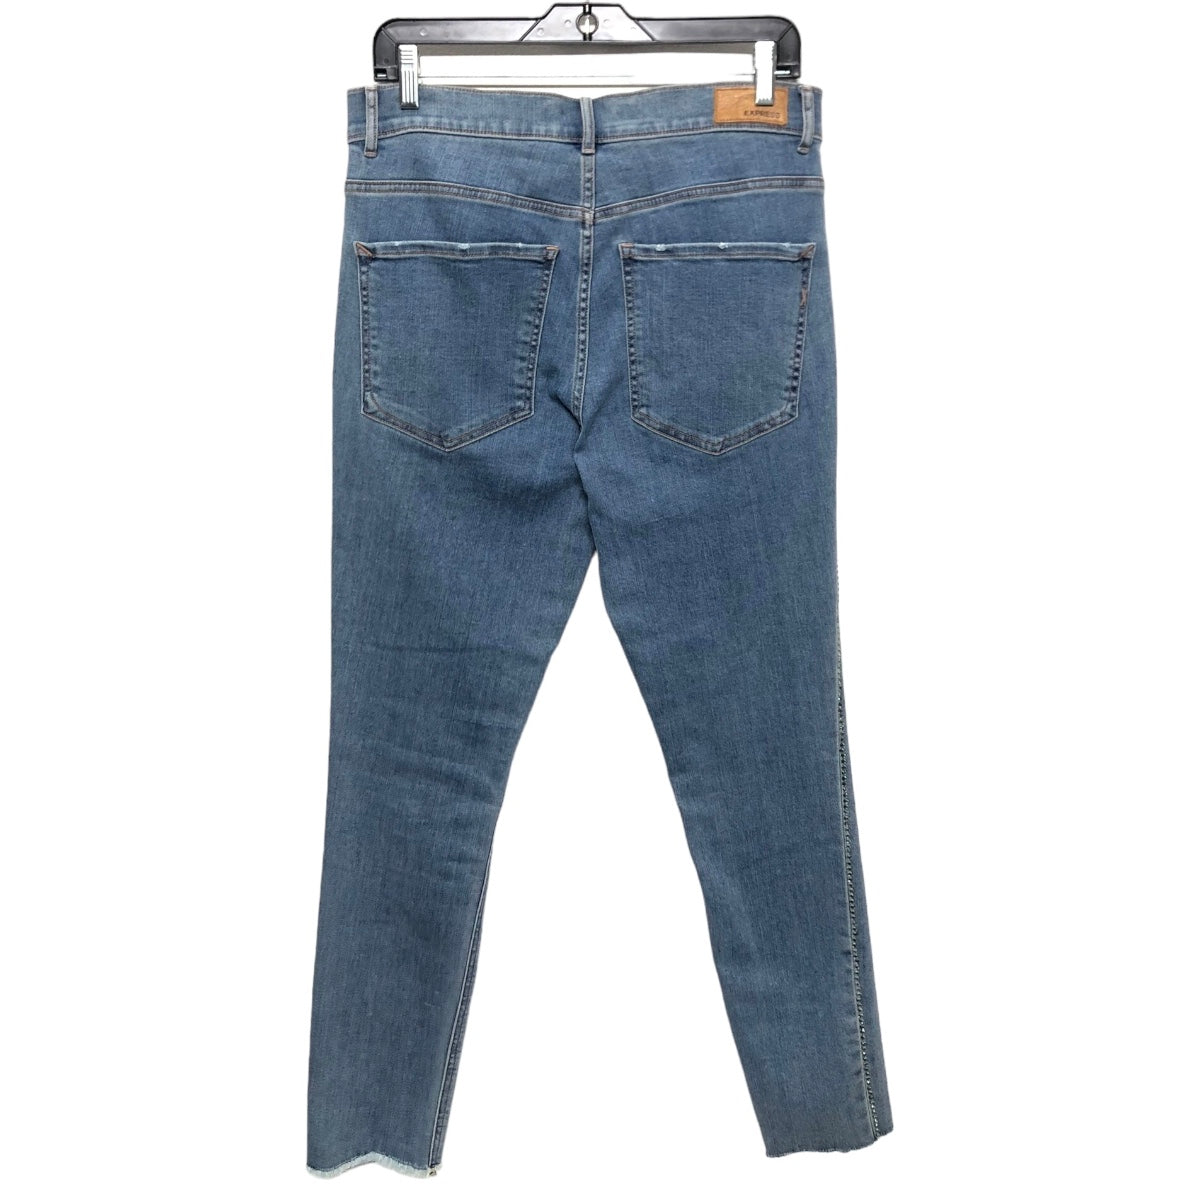 Blue Denim Jeans Jeggings Express, Size 10